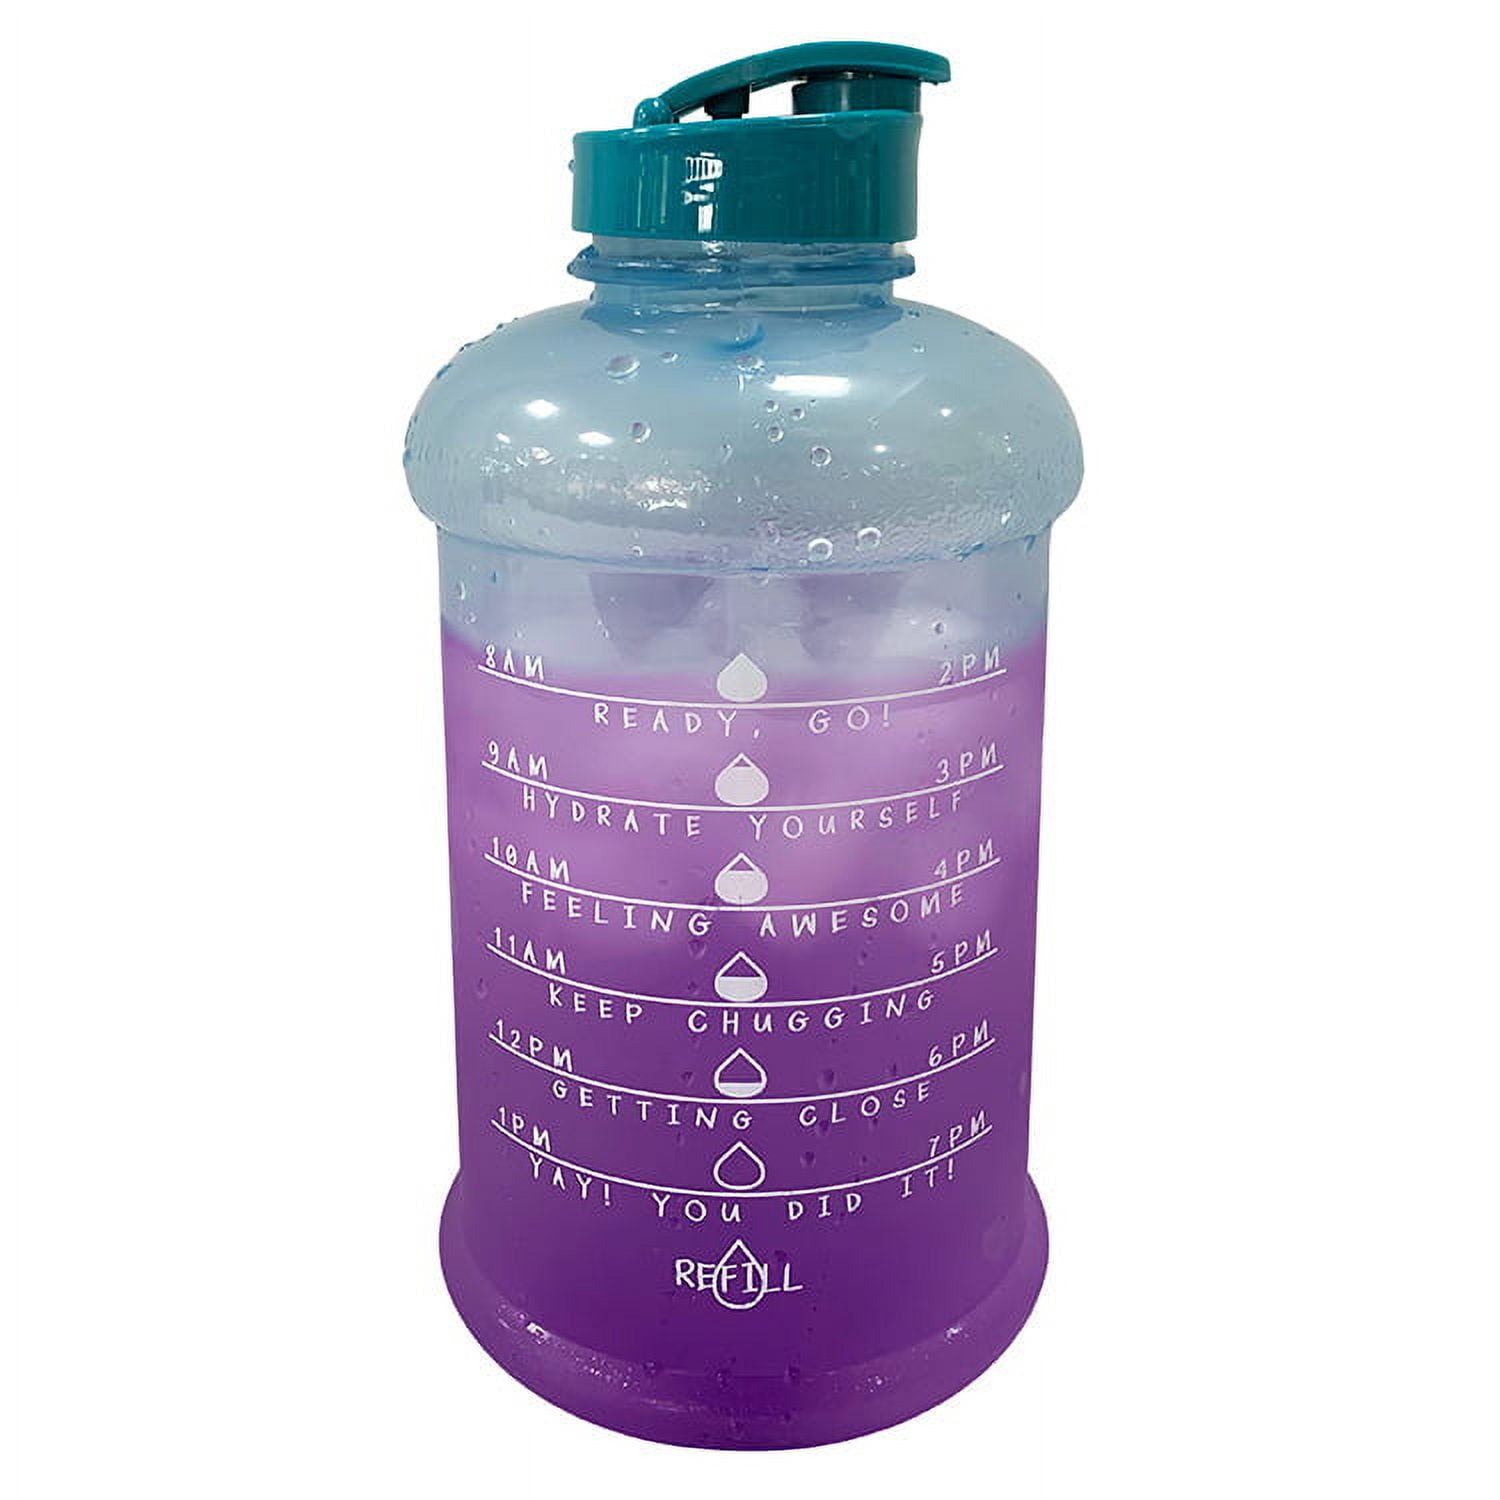 Botella Para Agua Tambito Mainstays-1500ml